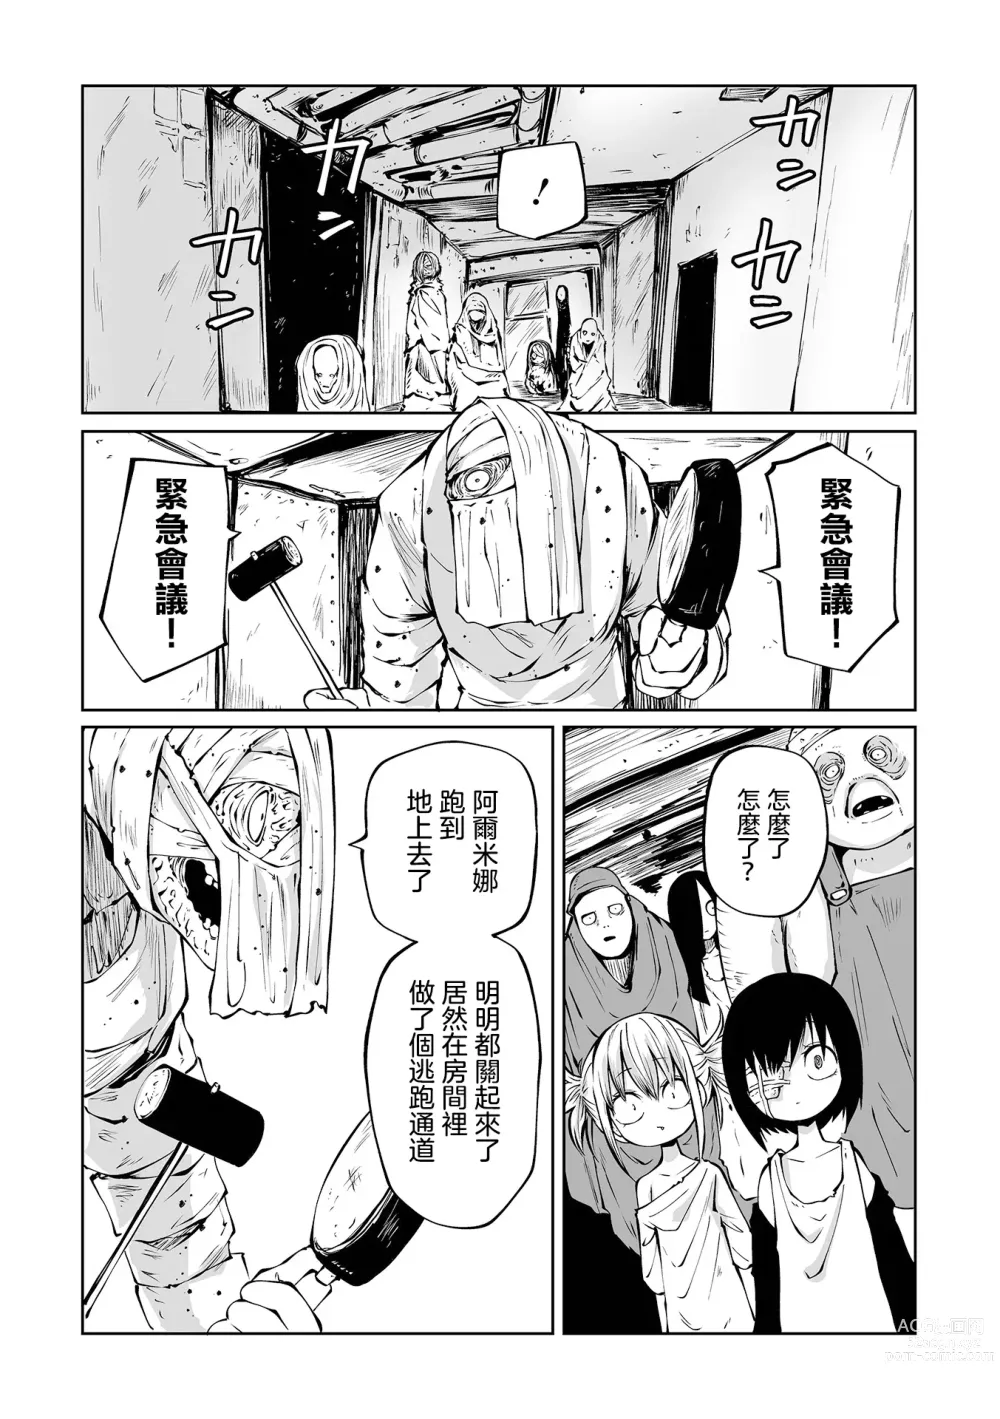 Page 44 of manga 地下生活